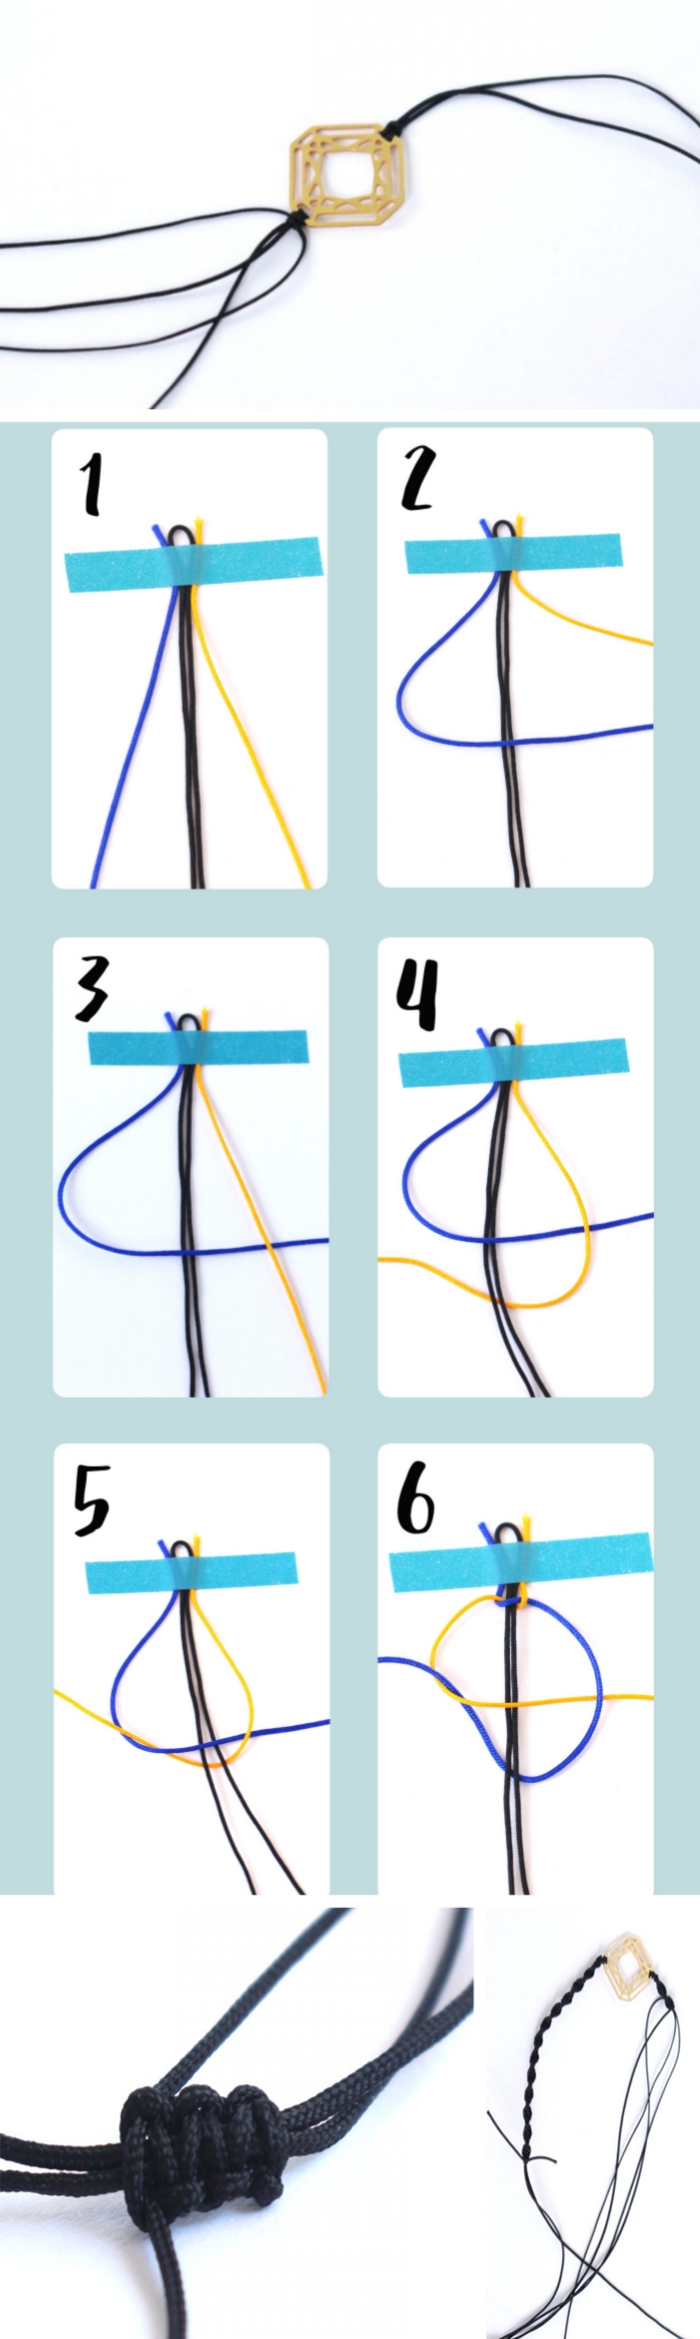 étapes à suivre pour faire un noeud macramé facile, pas à pas tressage macramé pour créer un bracelet en fil coton